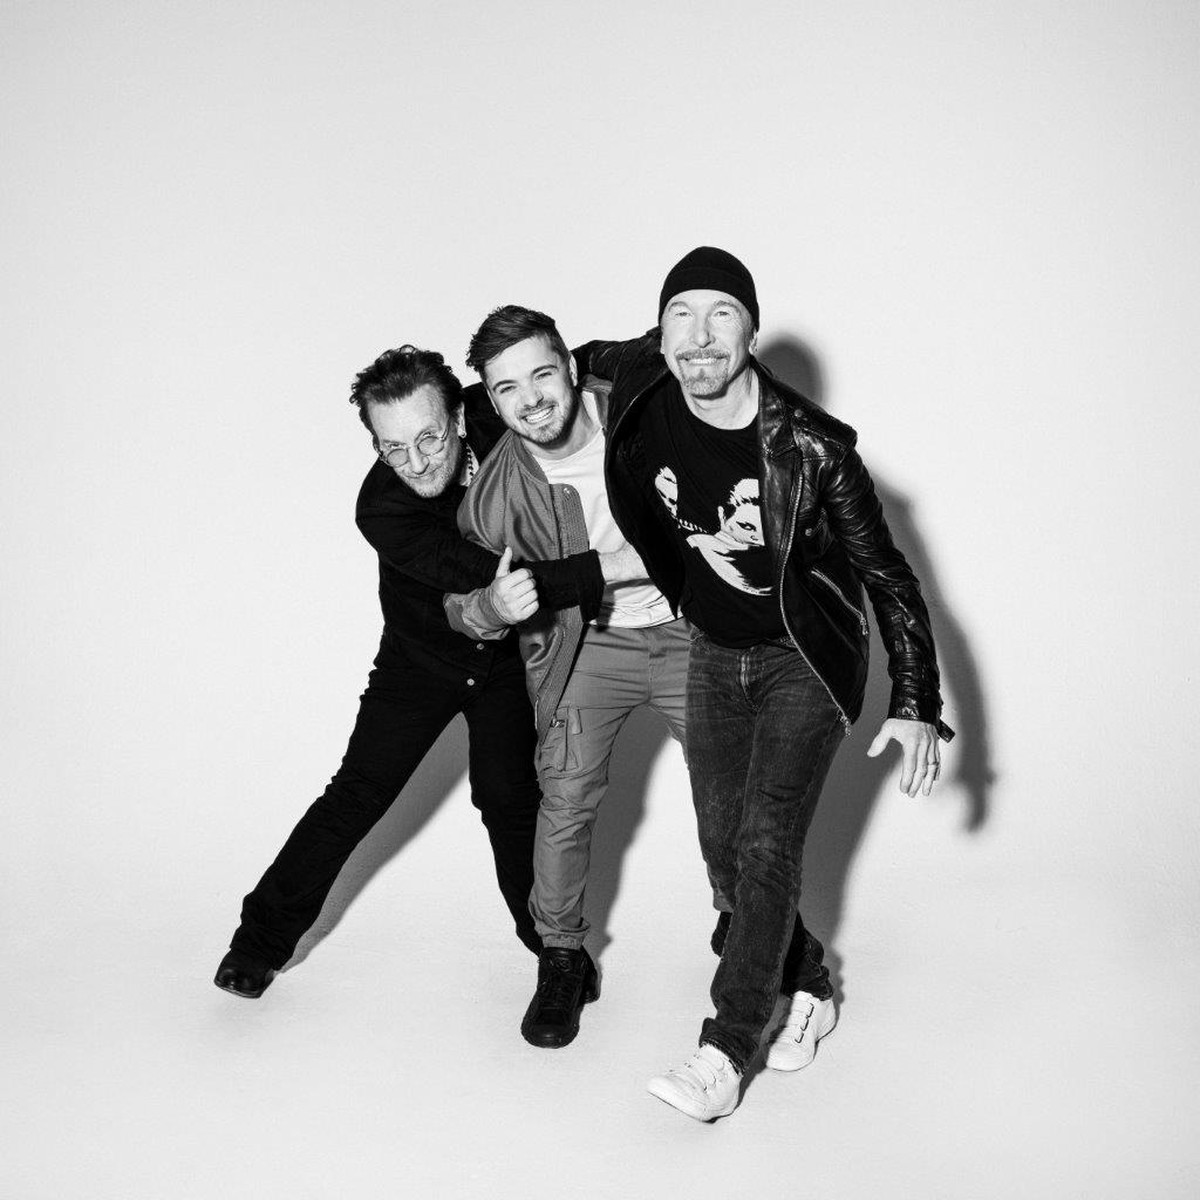 Martin Garrix vem ao Lolla com parceria com U2 na bagagem: ‘Experiência incrível’ |  Lollapalooza 2022